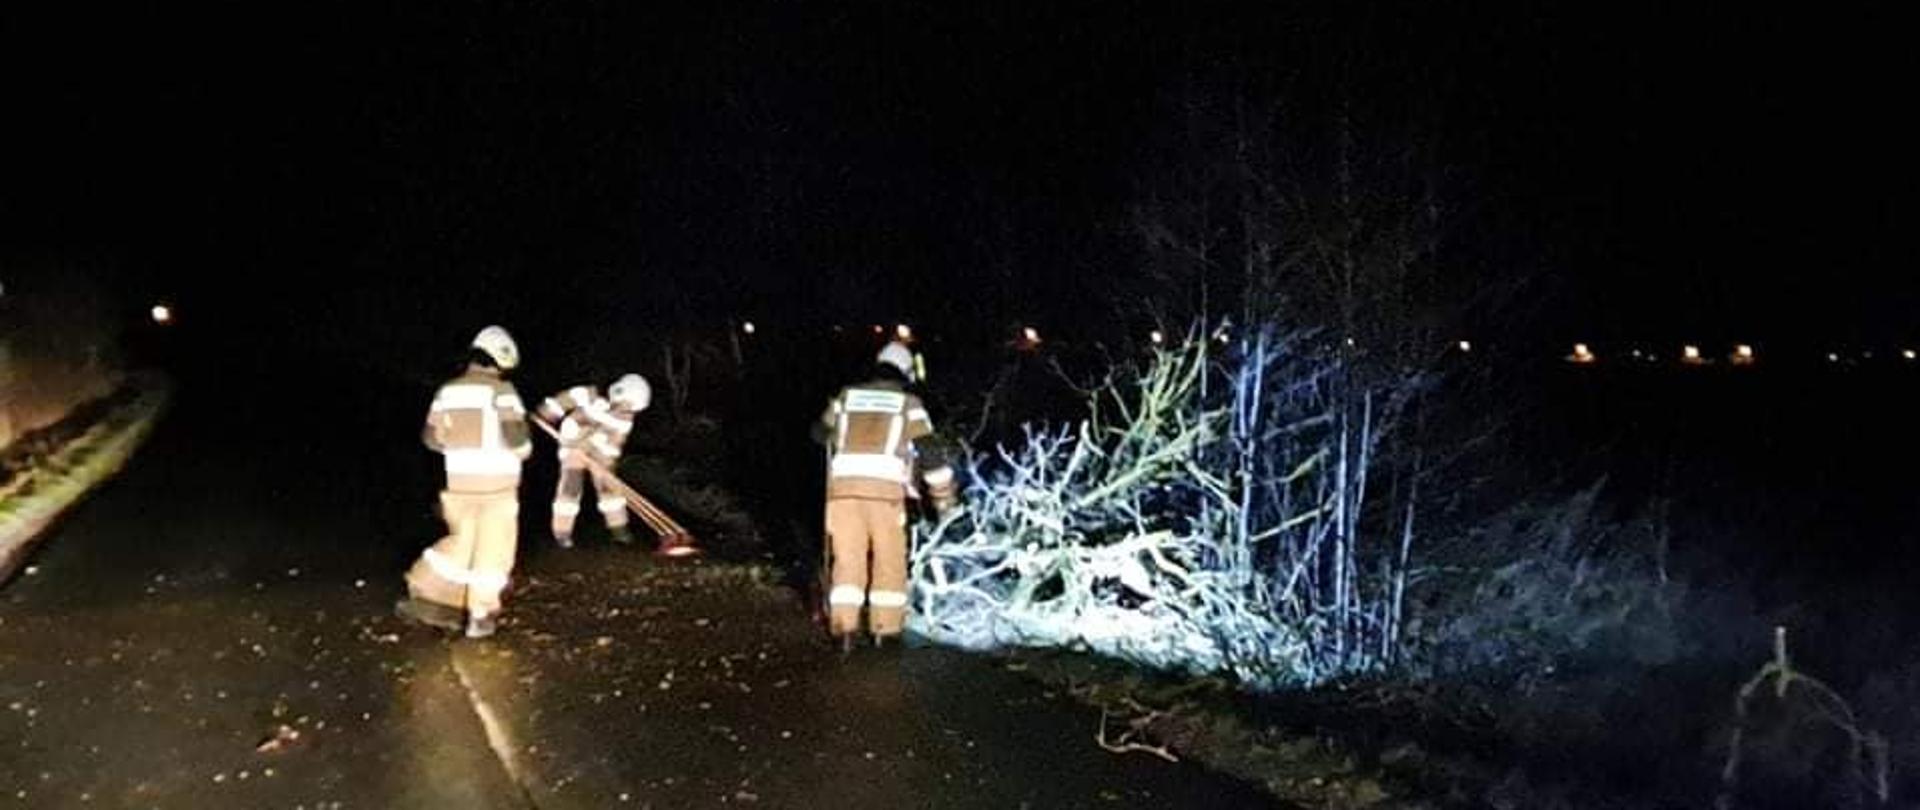 Zdjęcie zrobione w porze nocnej, strażacy usuwają połamane gałęzie z drogi, jeden z nich zmiata resztki konarów za pomocą szczoty